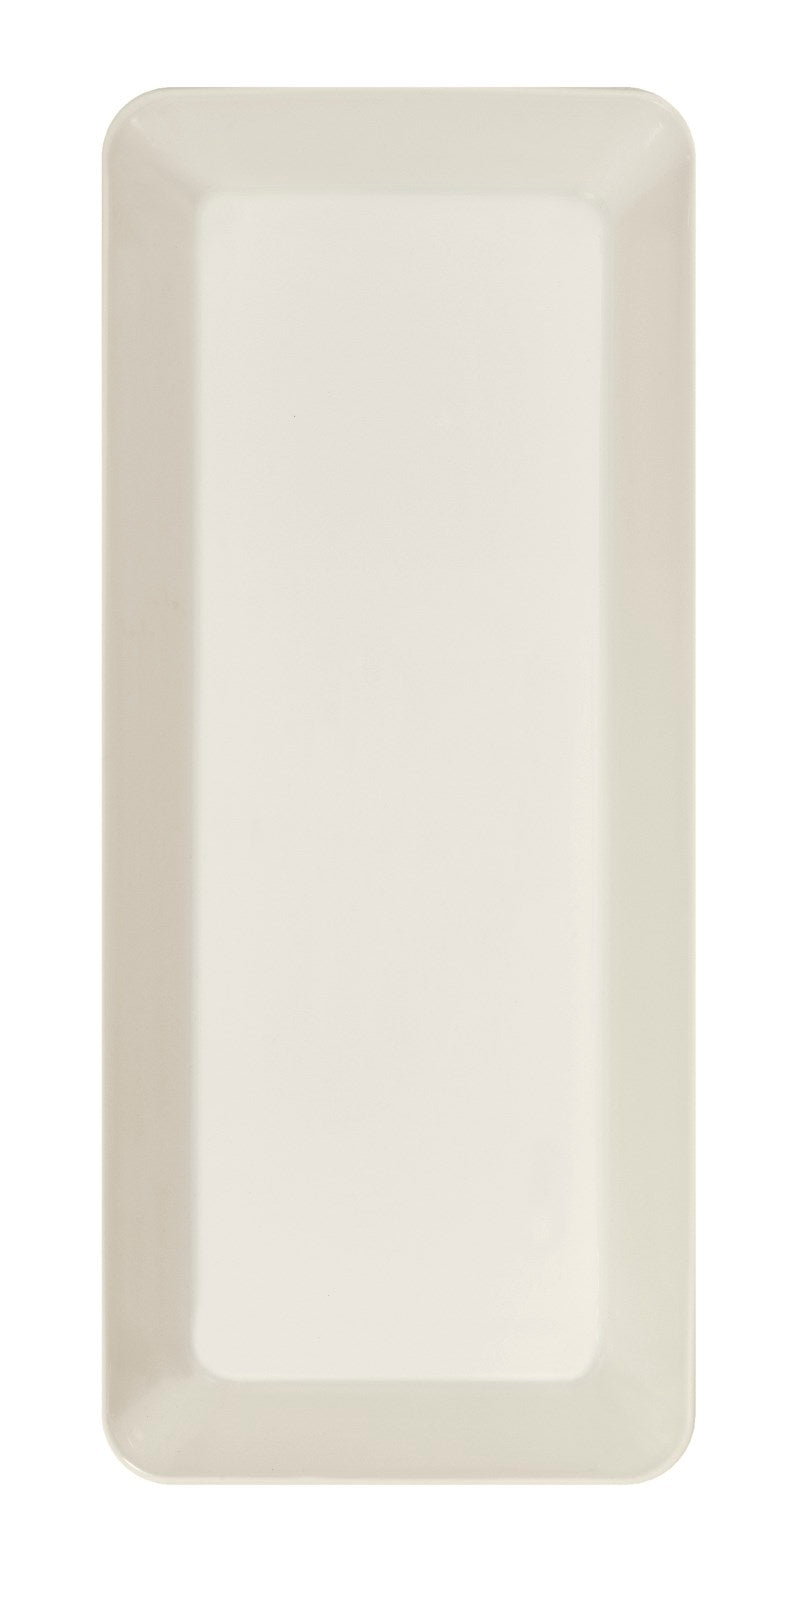 media image for Teema Serving Platter in Various Sizes design by Kaj Franck for Iittala 210